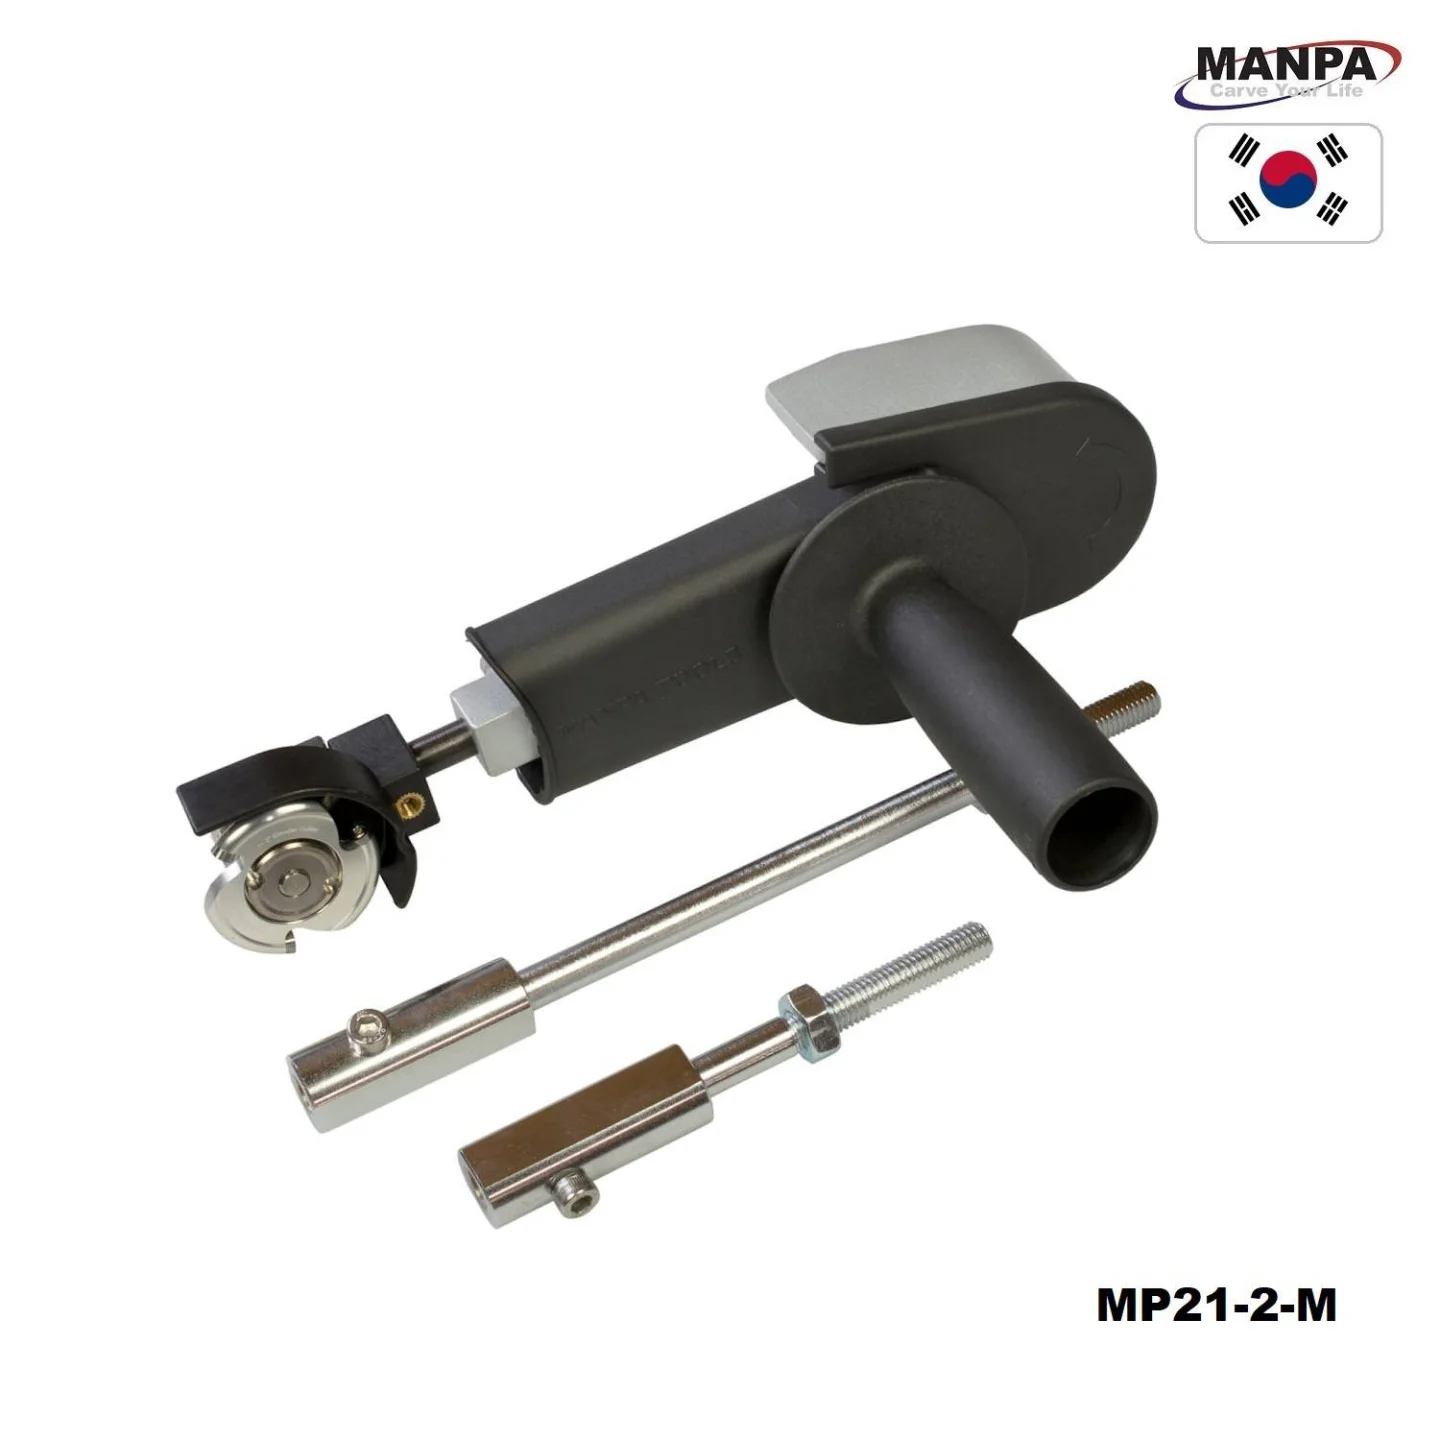 Manpa-Belt-Cutter-50-mm-full-set-MP21-2-.